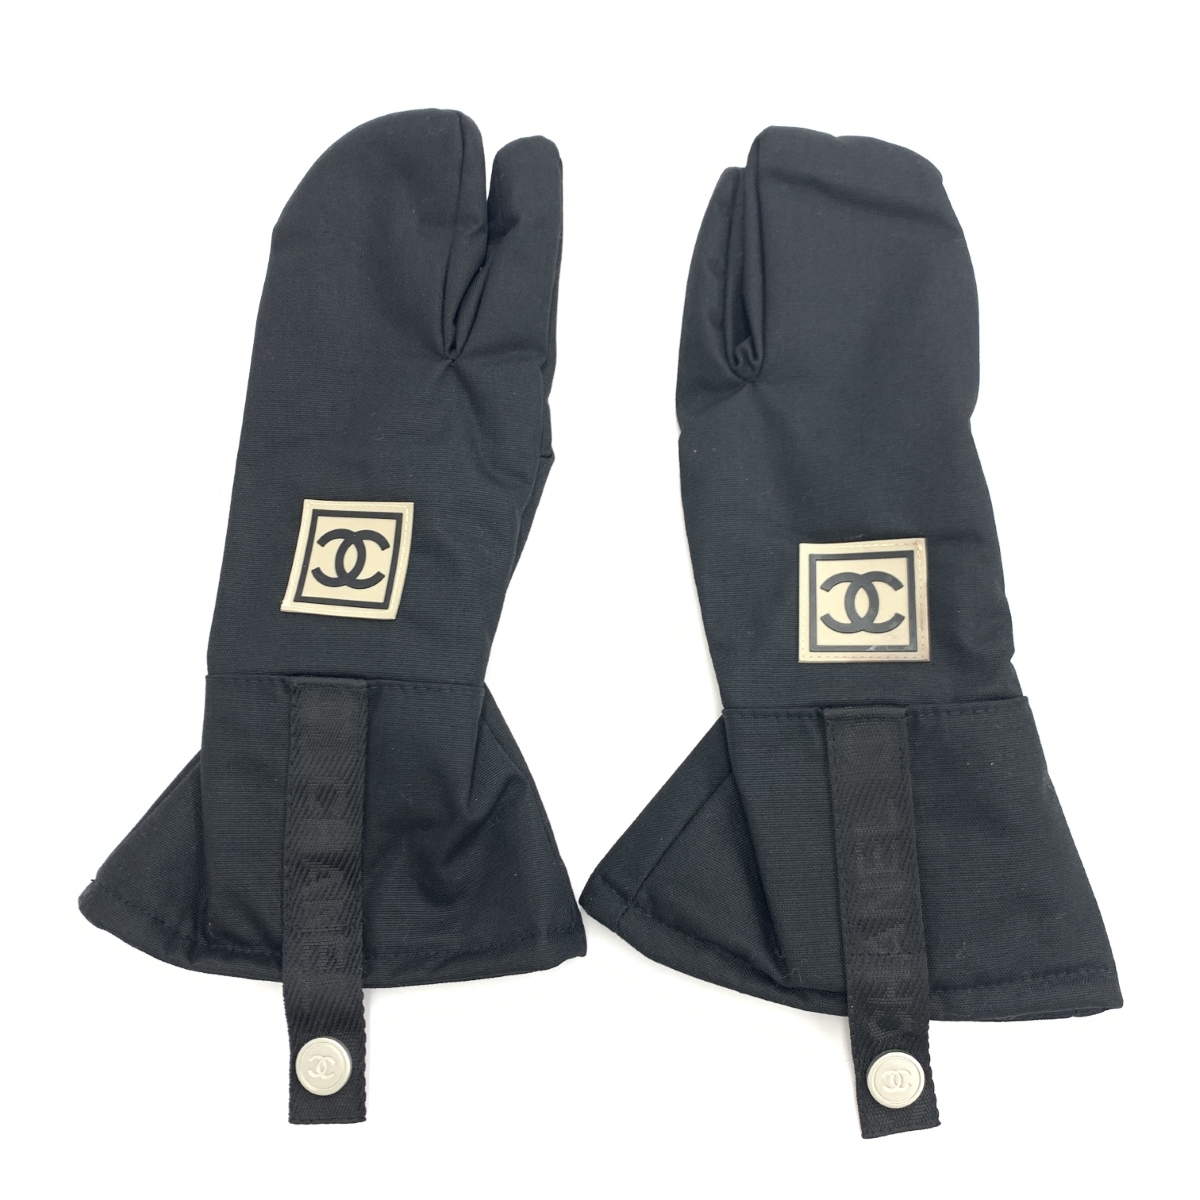 ◆CHANEL シャネルスポーツ グローブ ◆ ブラック ナイロン スノボ レディース 手袋 glove グローブ 服飾小物の画像2